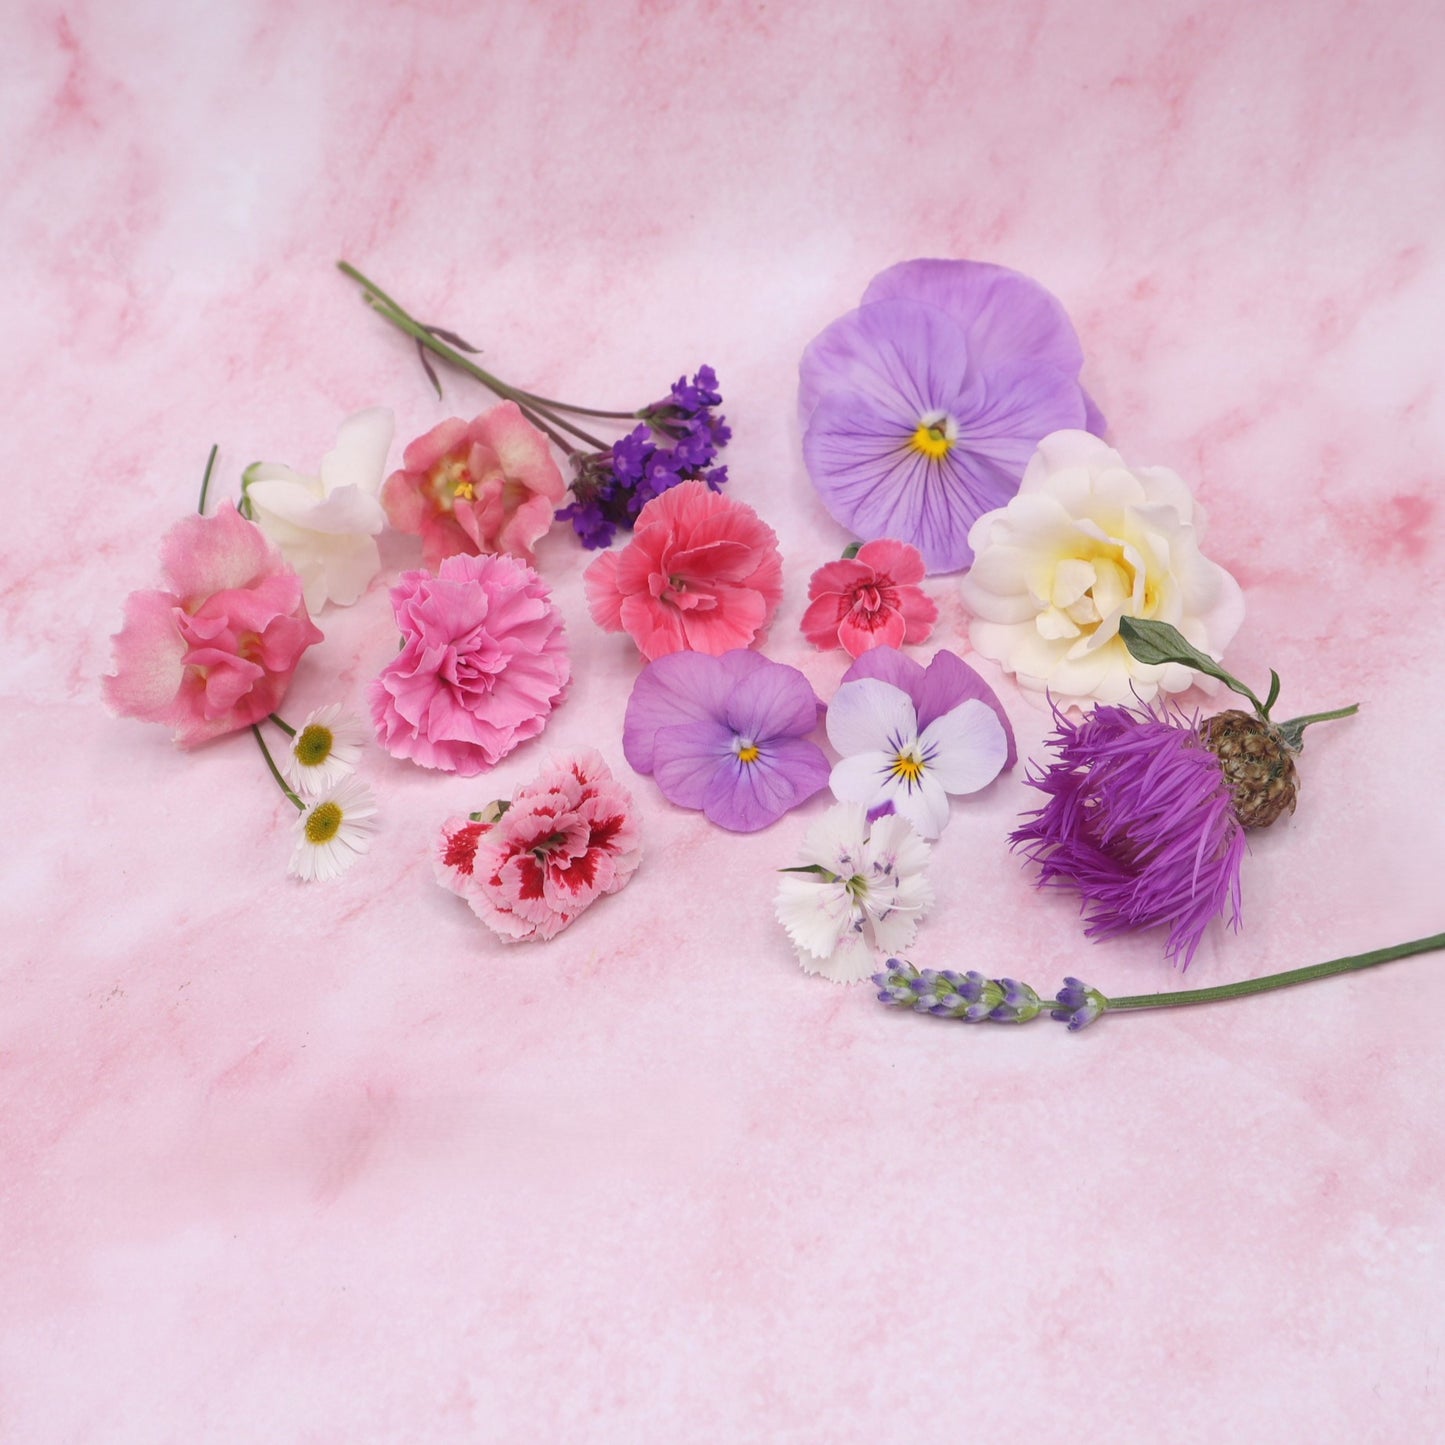 Lieve mix, eetbare bloemen, zachte kleuren, floral delight, pastel roze lila wit. Floral Delight